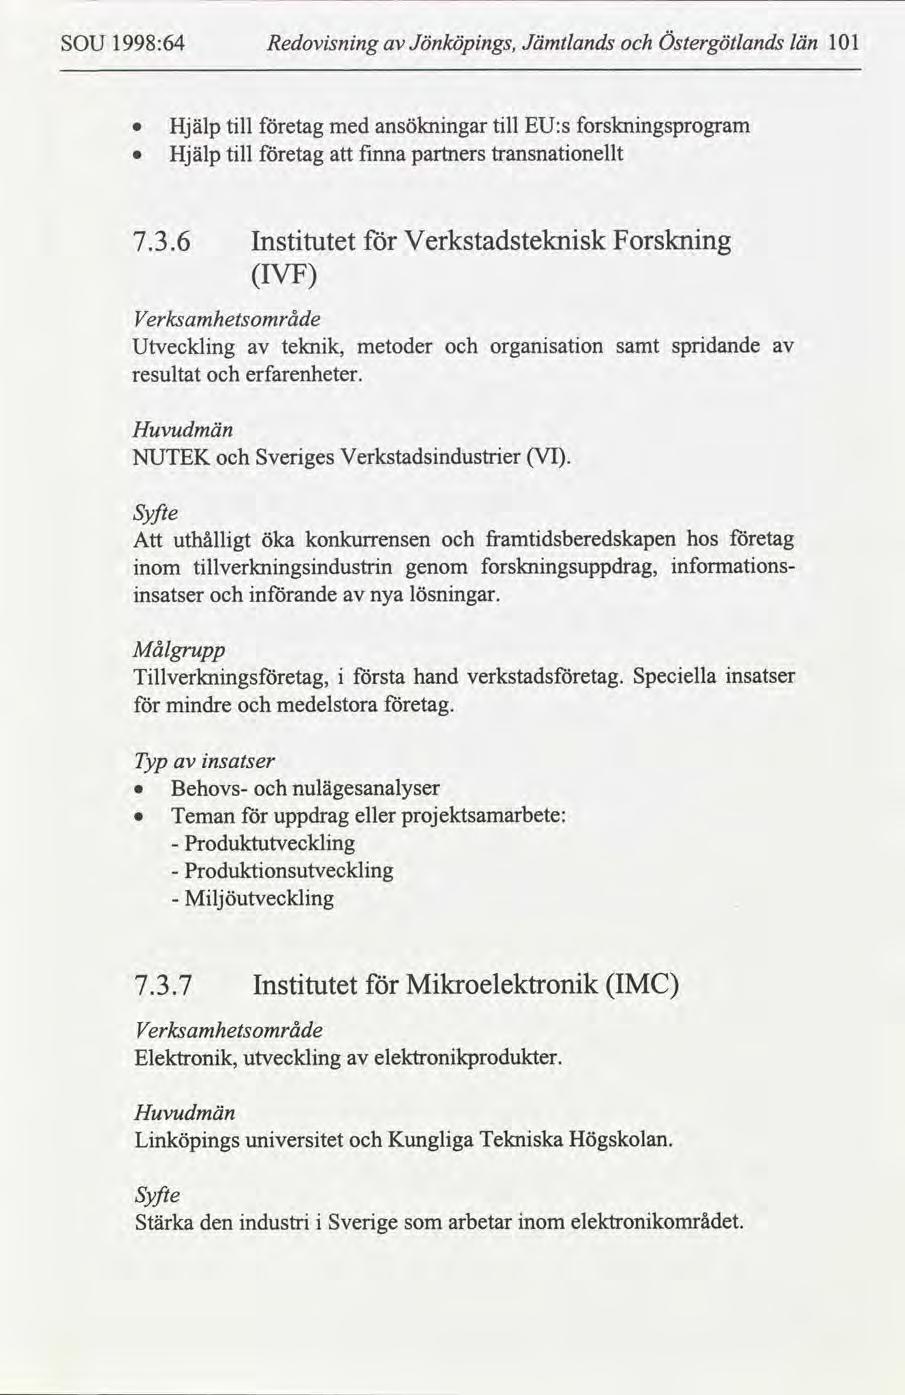 SOU 1998:64 Redovsnng Jönköpngs, Jämtlands Östergötlands län 11 Hjälp tll etag med ansöknngar tll EU:s forsknngsprogram Hjälp tll etag fnna partners transnatonellt 7.3.